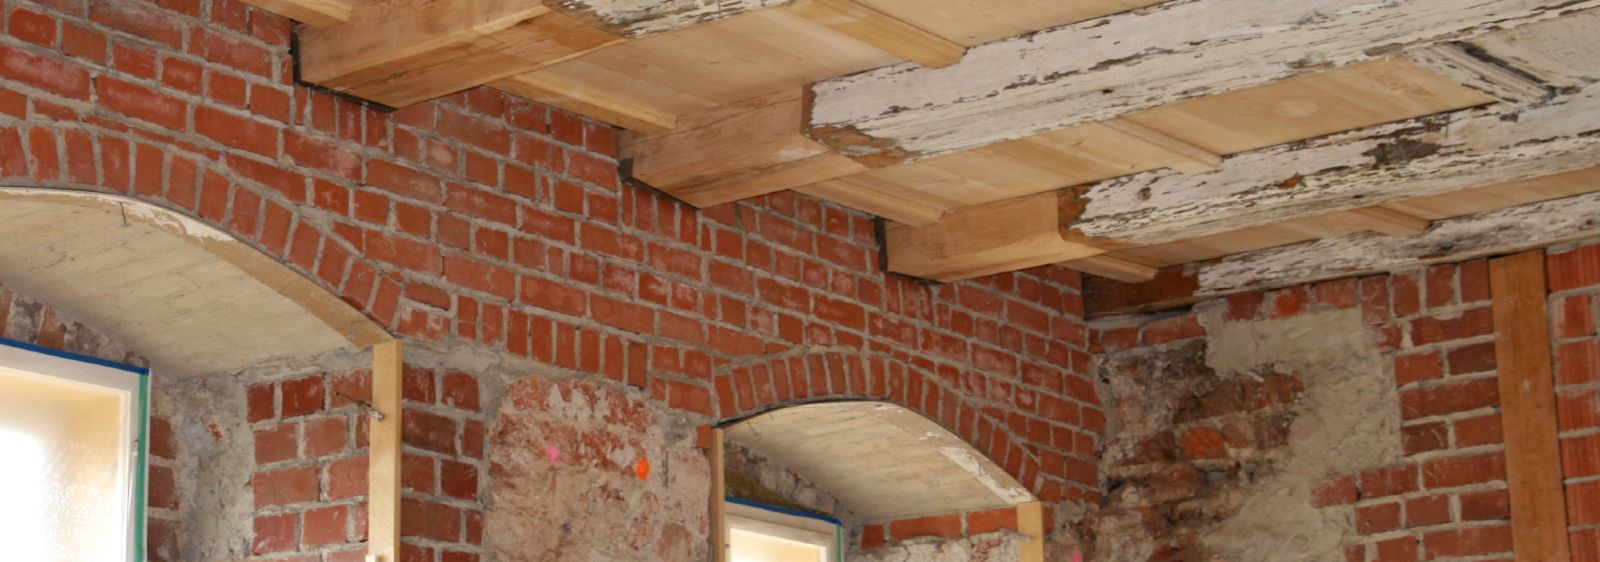 Sanierte Holzbalkendecke in einem Barockschloss – die geschädigten Holzbalkenköpfe müssen unbedingt erneuert und das Außenmauerwerk aus Vollziegeln saniert werden